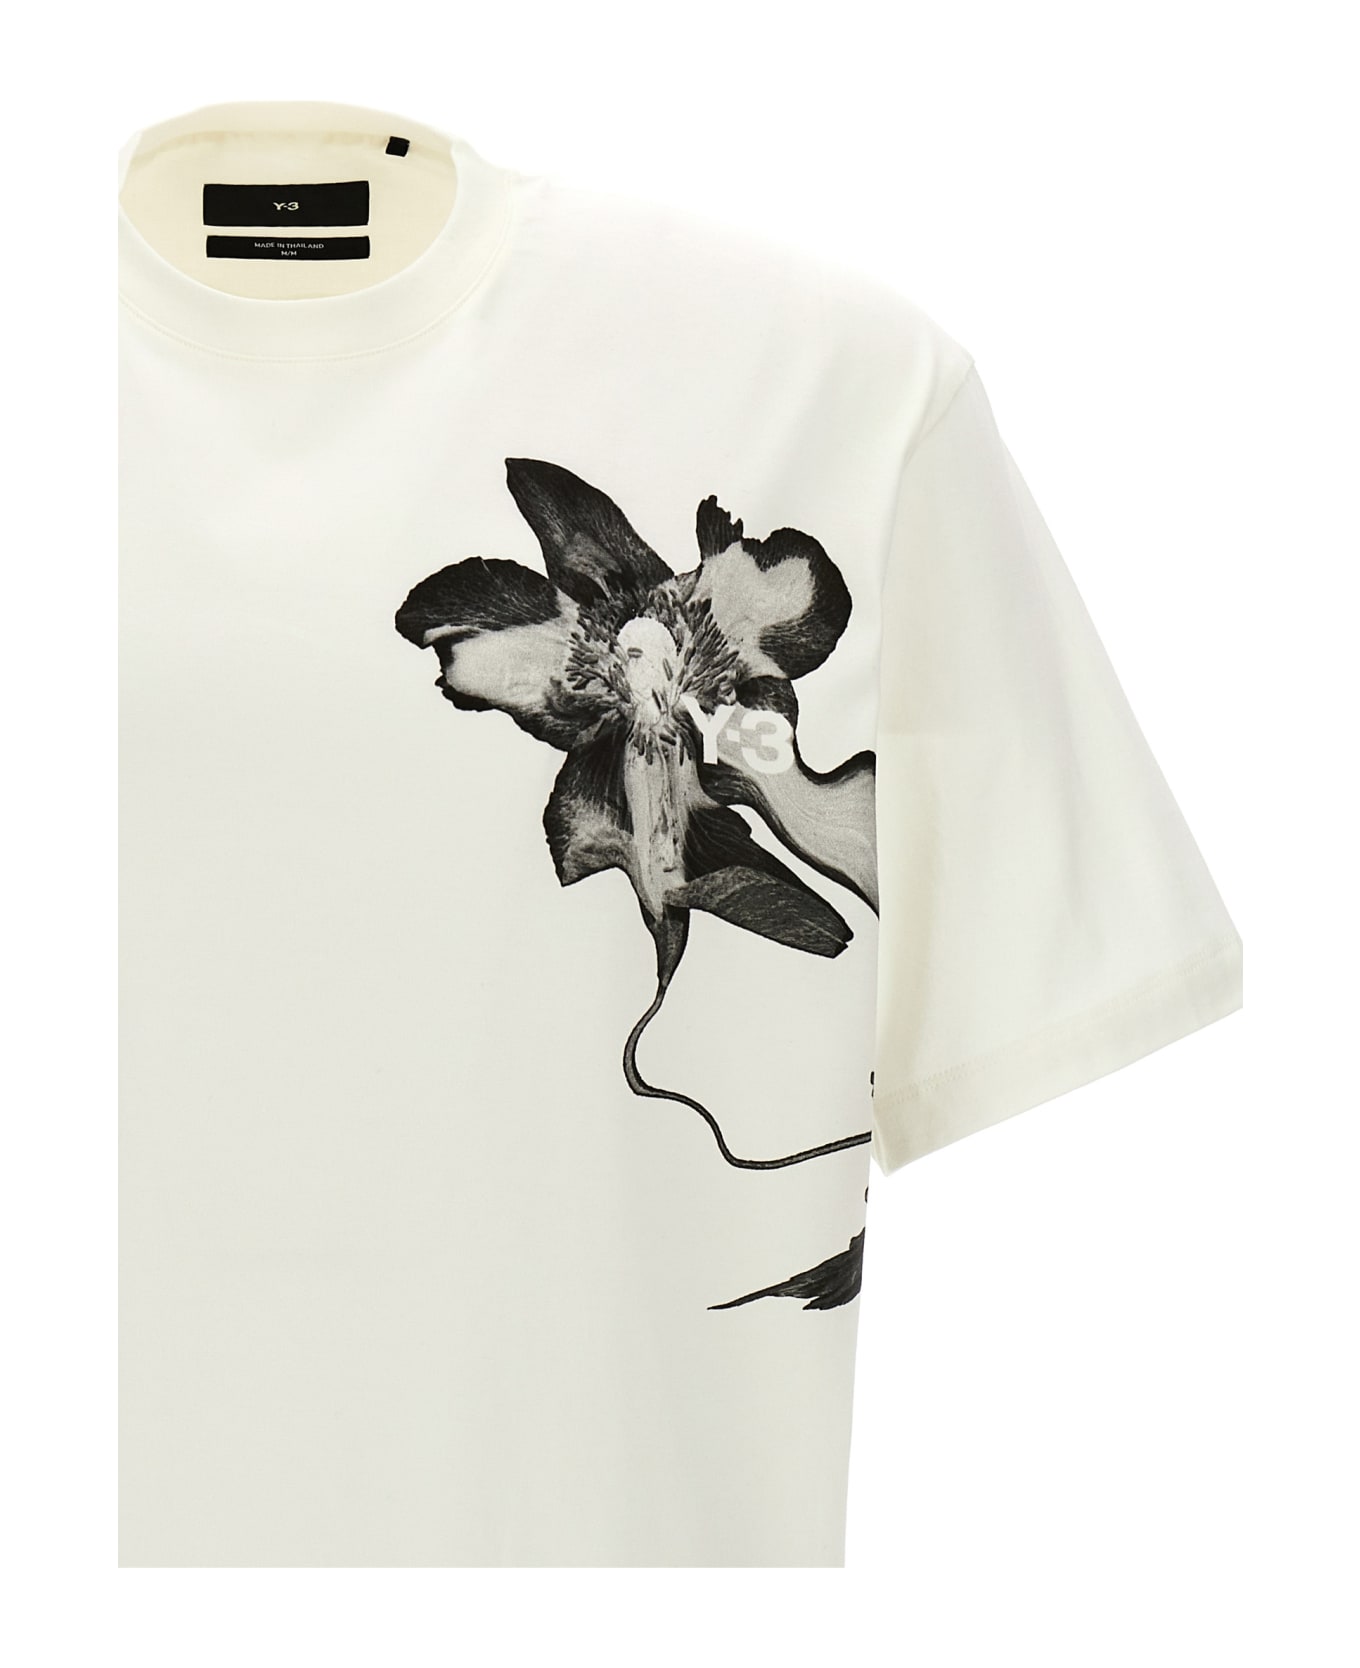 Y-3 'gfx' T-shirt - White/Black